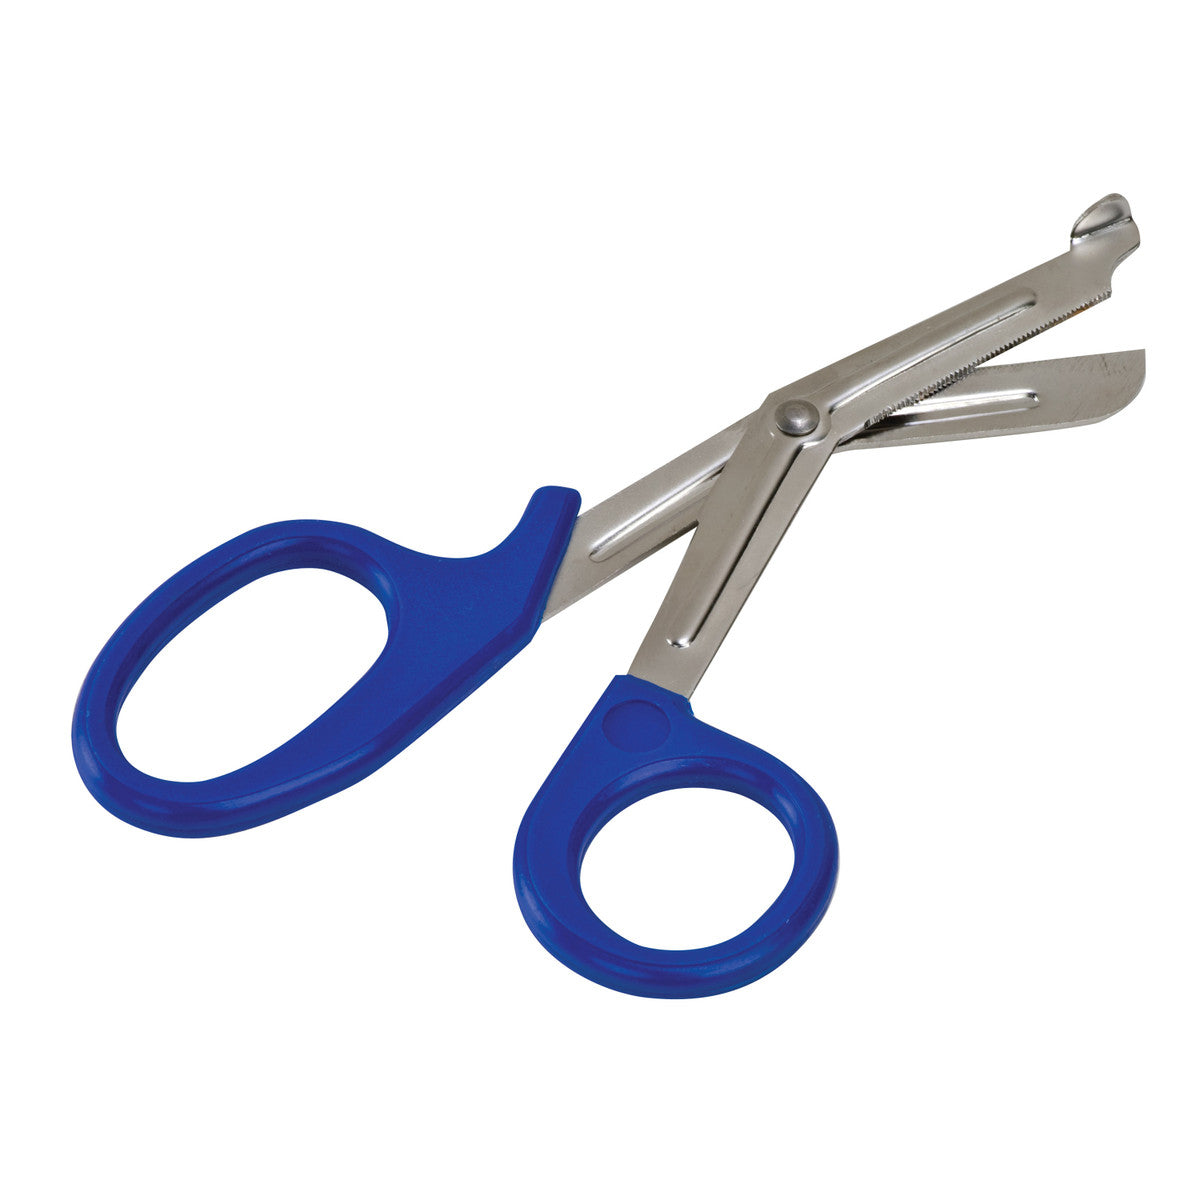 Fridge Magnet Scissors – Plant Material